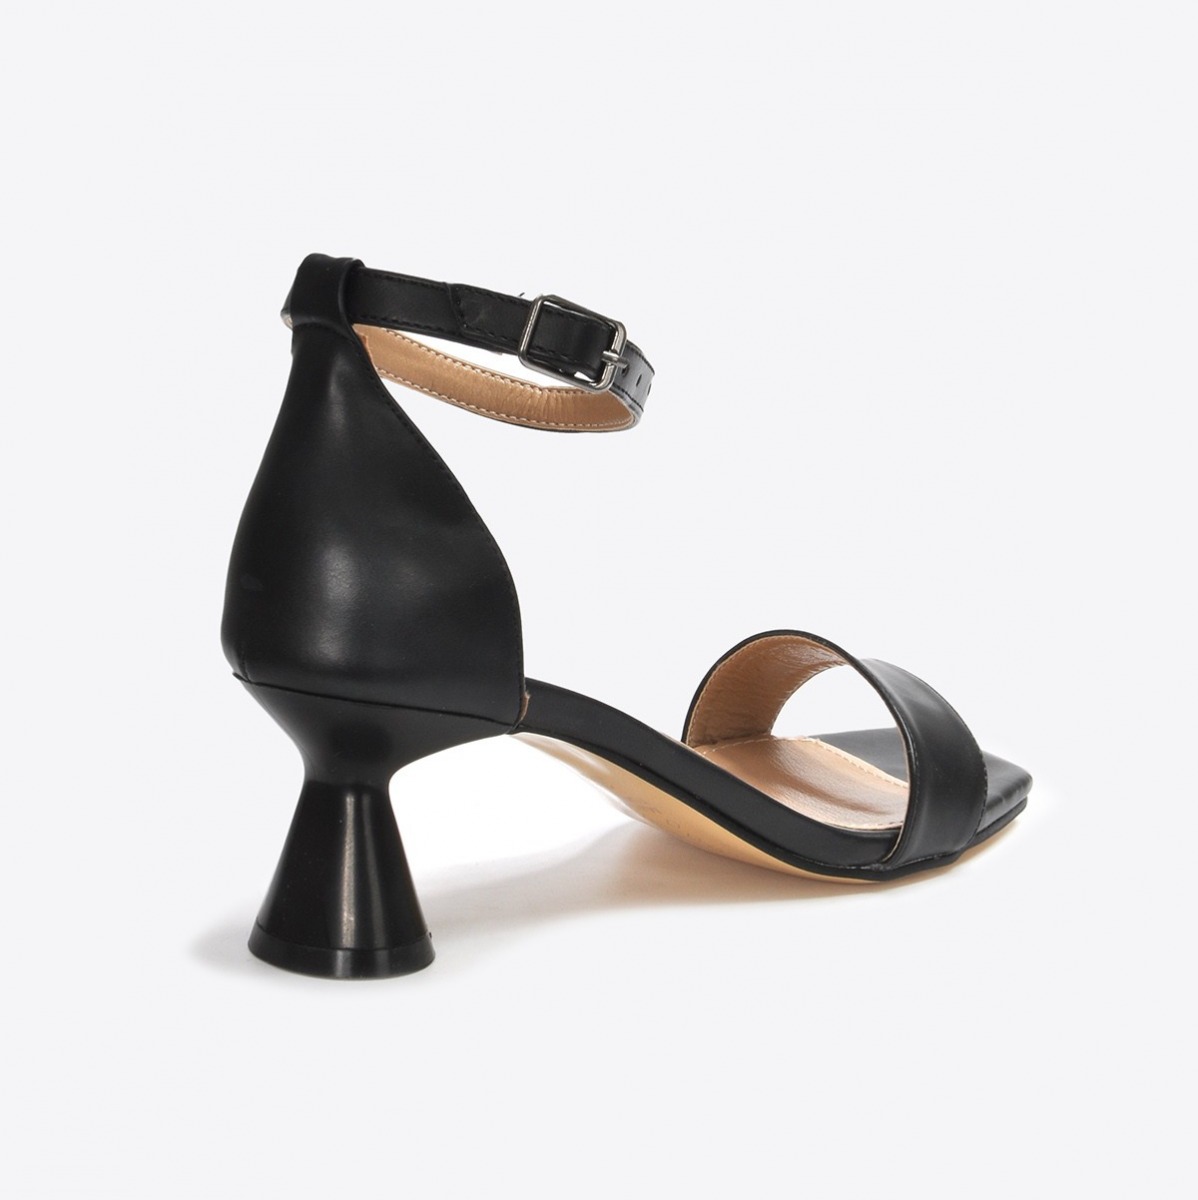 Flo Kadın  Siyah Klasik Topuklu Ayakkabı VZN21-032Y. 4